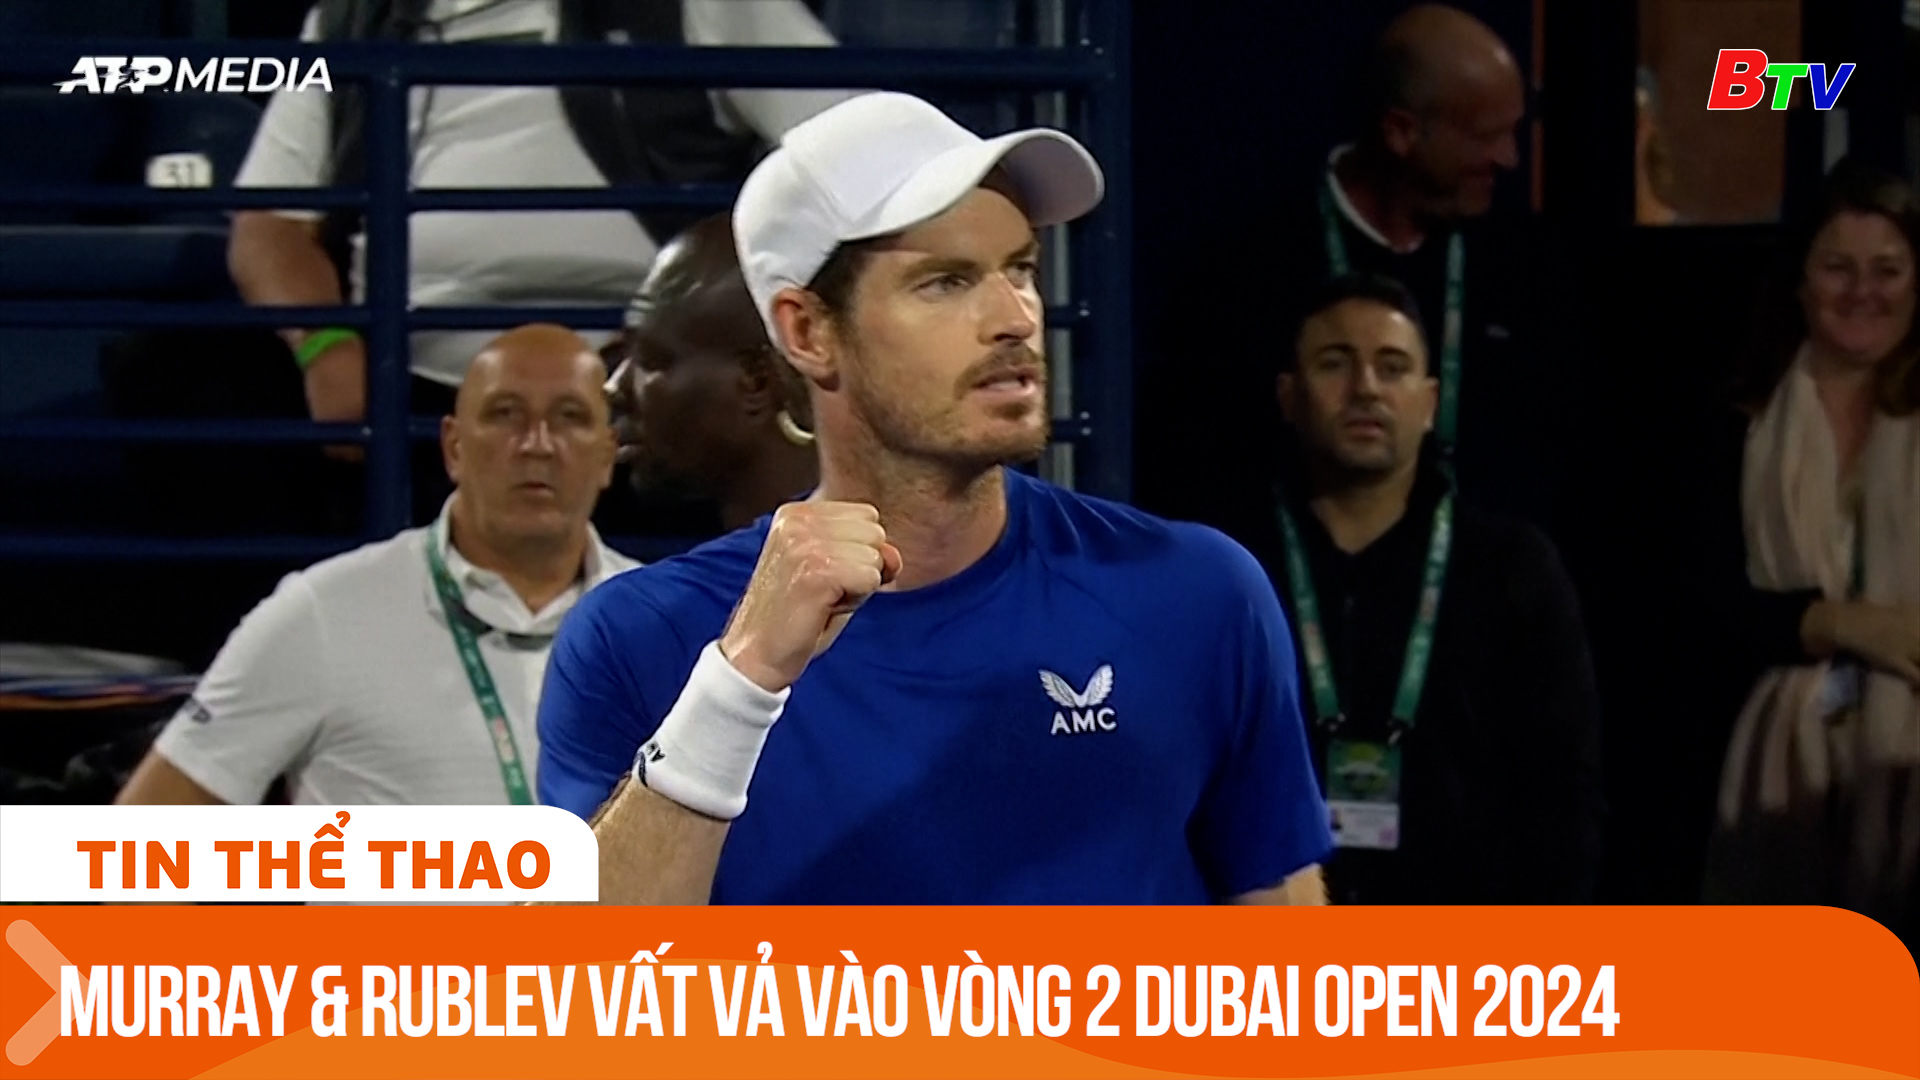 Andy Murray và Andrey Rublev vất vả vào vòng 2 Dubai Open 2024 | Tin Thể thao 24h